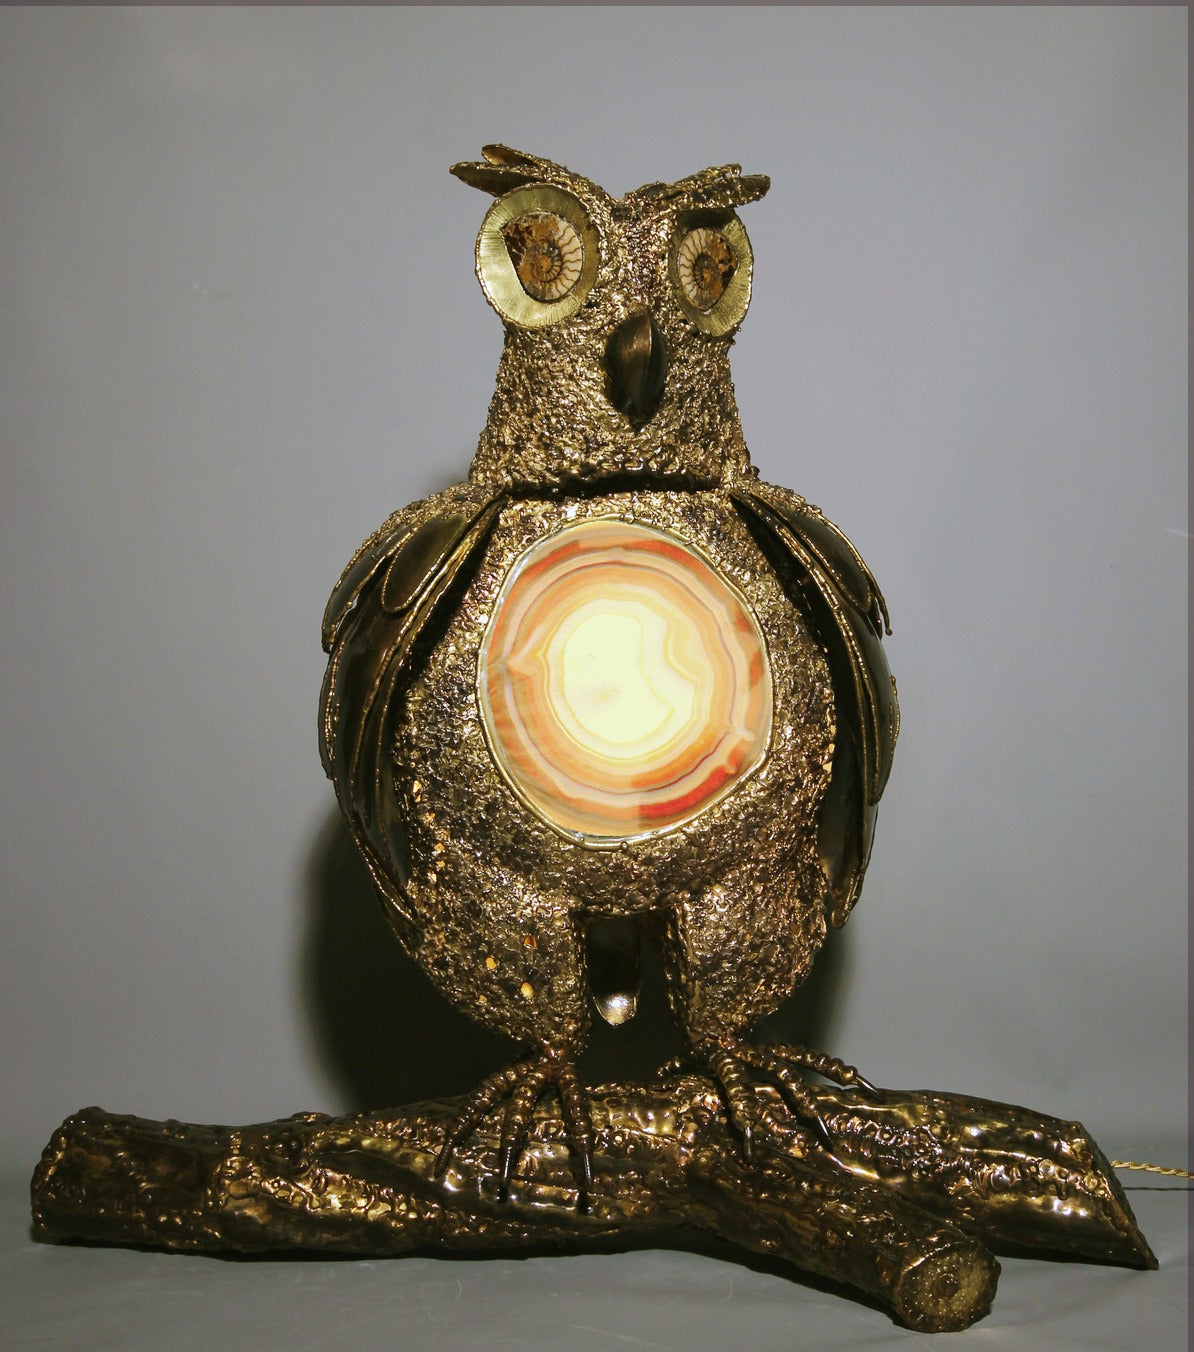 Spektakuläre leuchtende Skulptur von Richard Faure aus bearbeitetem Messing.
Der Unterleib ist aus einer Achatscheibe gefertigt, die die Beleuchtung verdeckt, die Augen sind zwei fossile Ammoniten. Einzigartiges Stück. Unterschrieben.